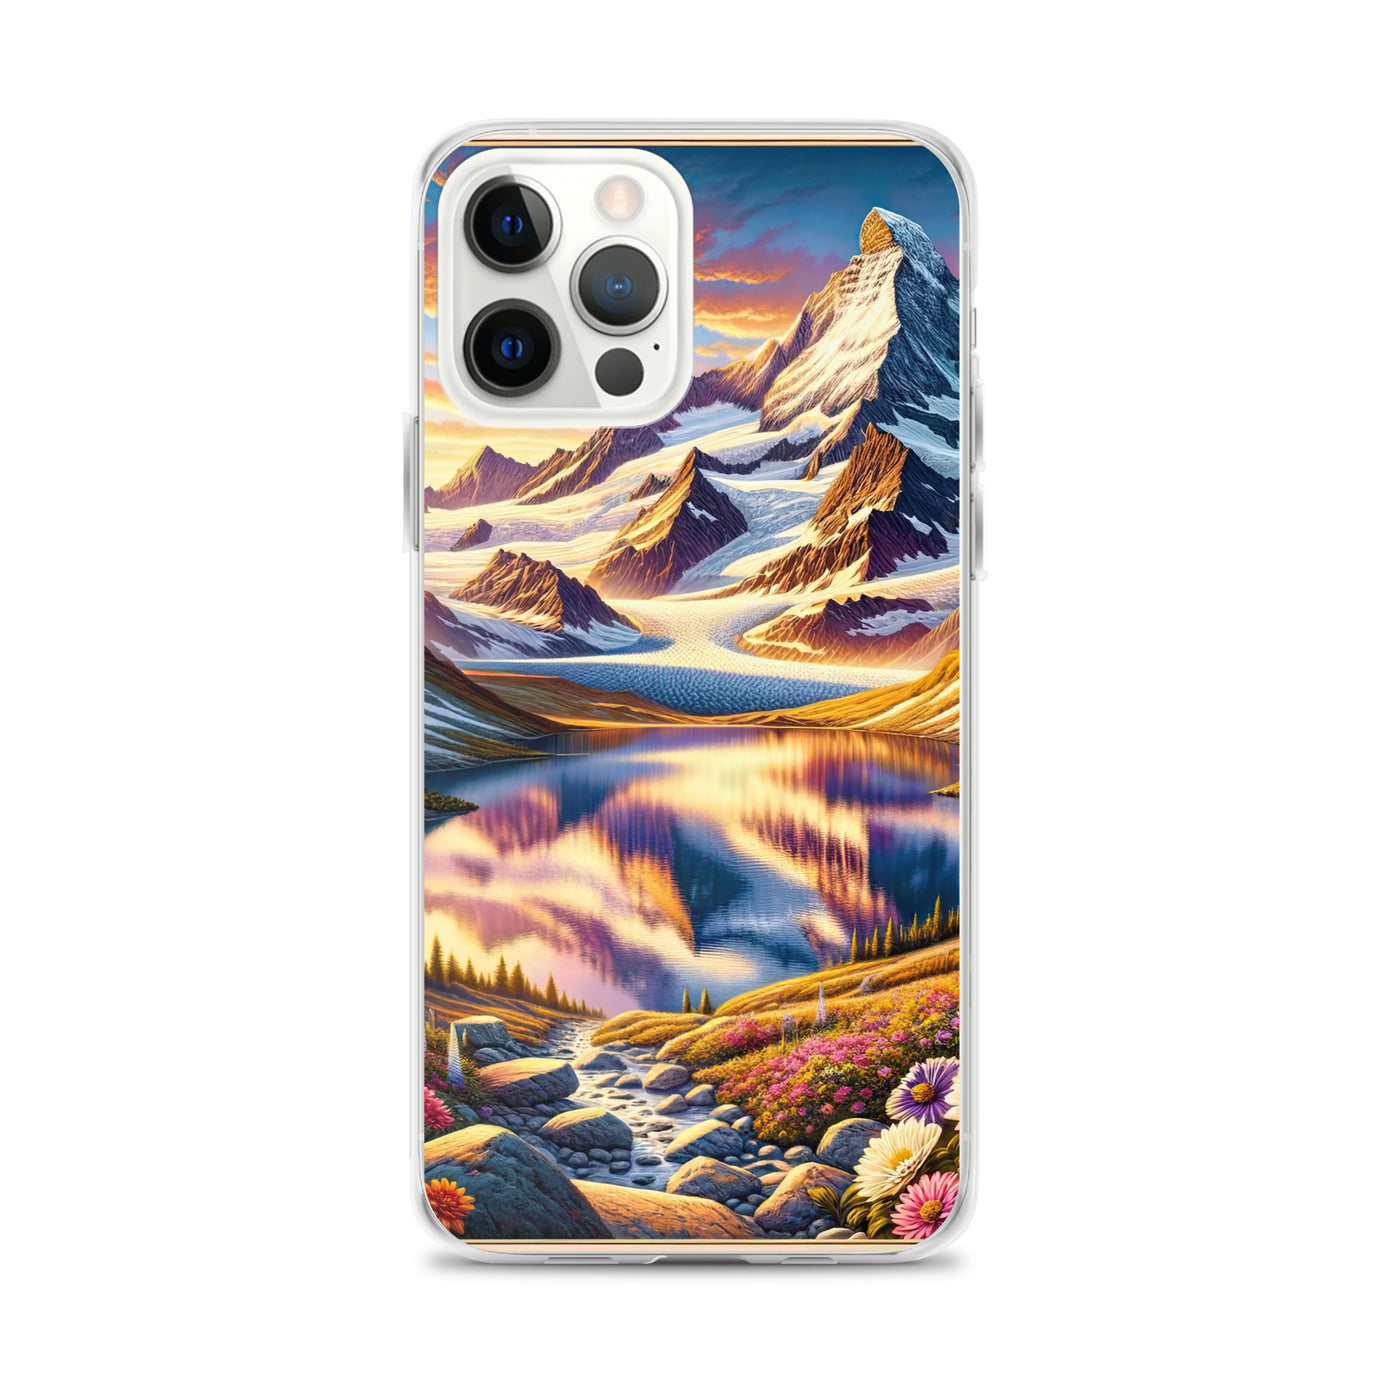 Quadratische Illustration der Alpen mit schneebedeckten Gipfeln und Wildblumen - iPhone Schutzhülle (durchsichtig) berge xxx yyy zzz iPhone 12 Pro Max